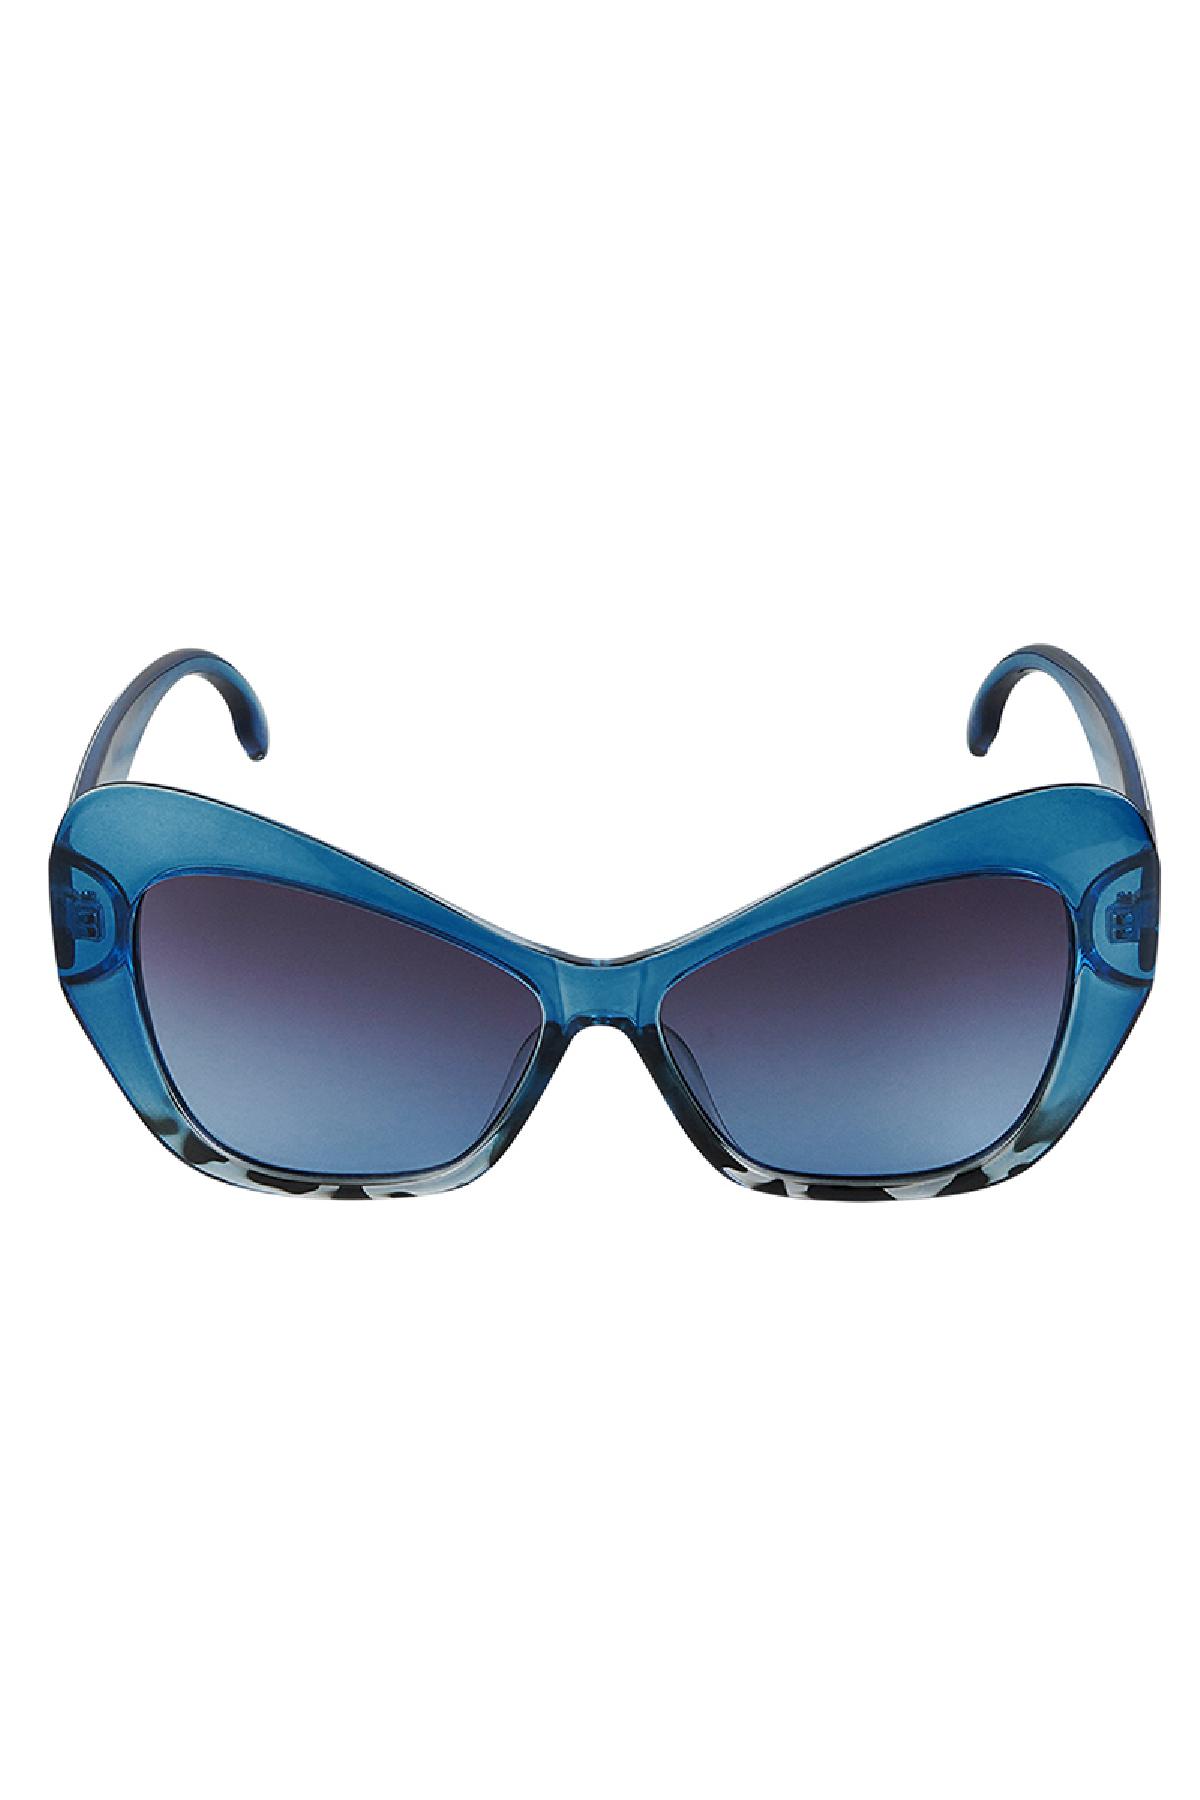 Déclaration de lunettes de soleil Bleu PC Taille unique h5 Image3